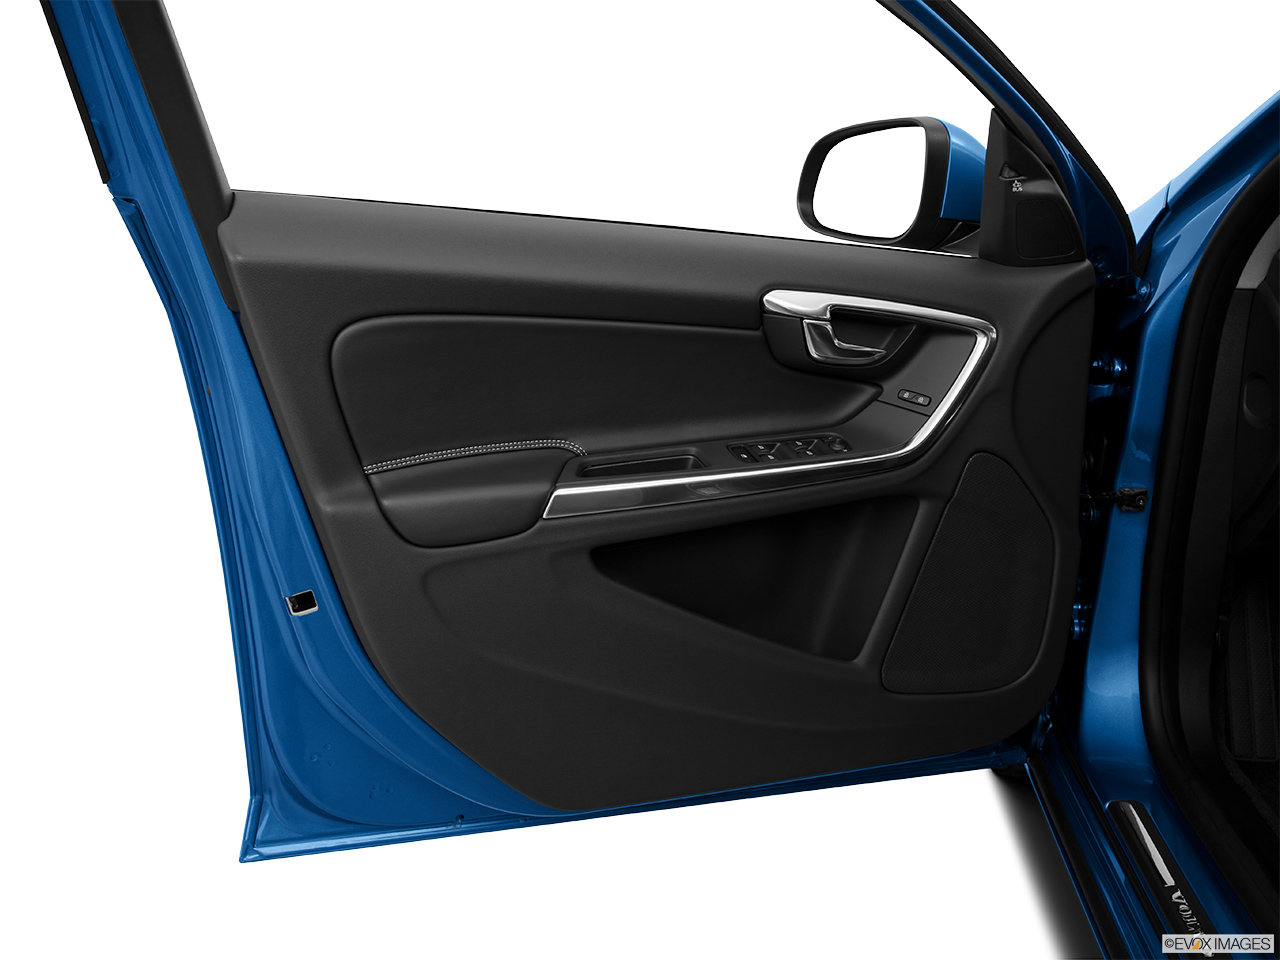 2014 Volvo S60 T5 FWD Premier Plus Inside of driver's side open door, window open. 